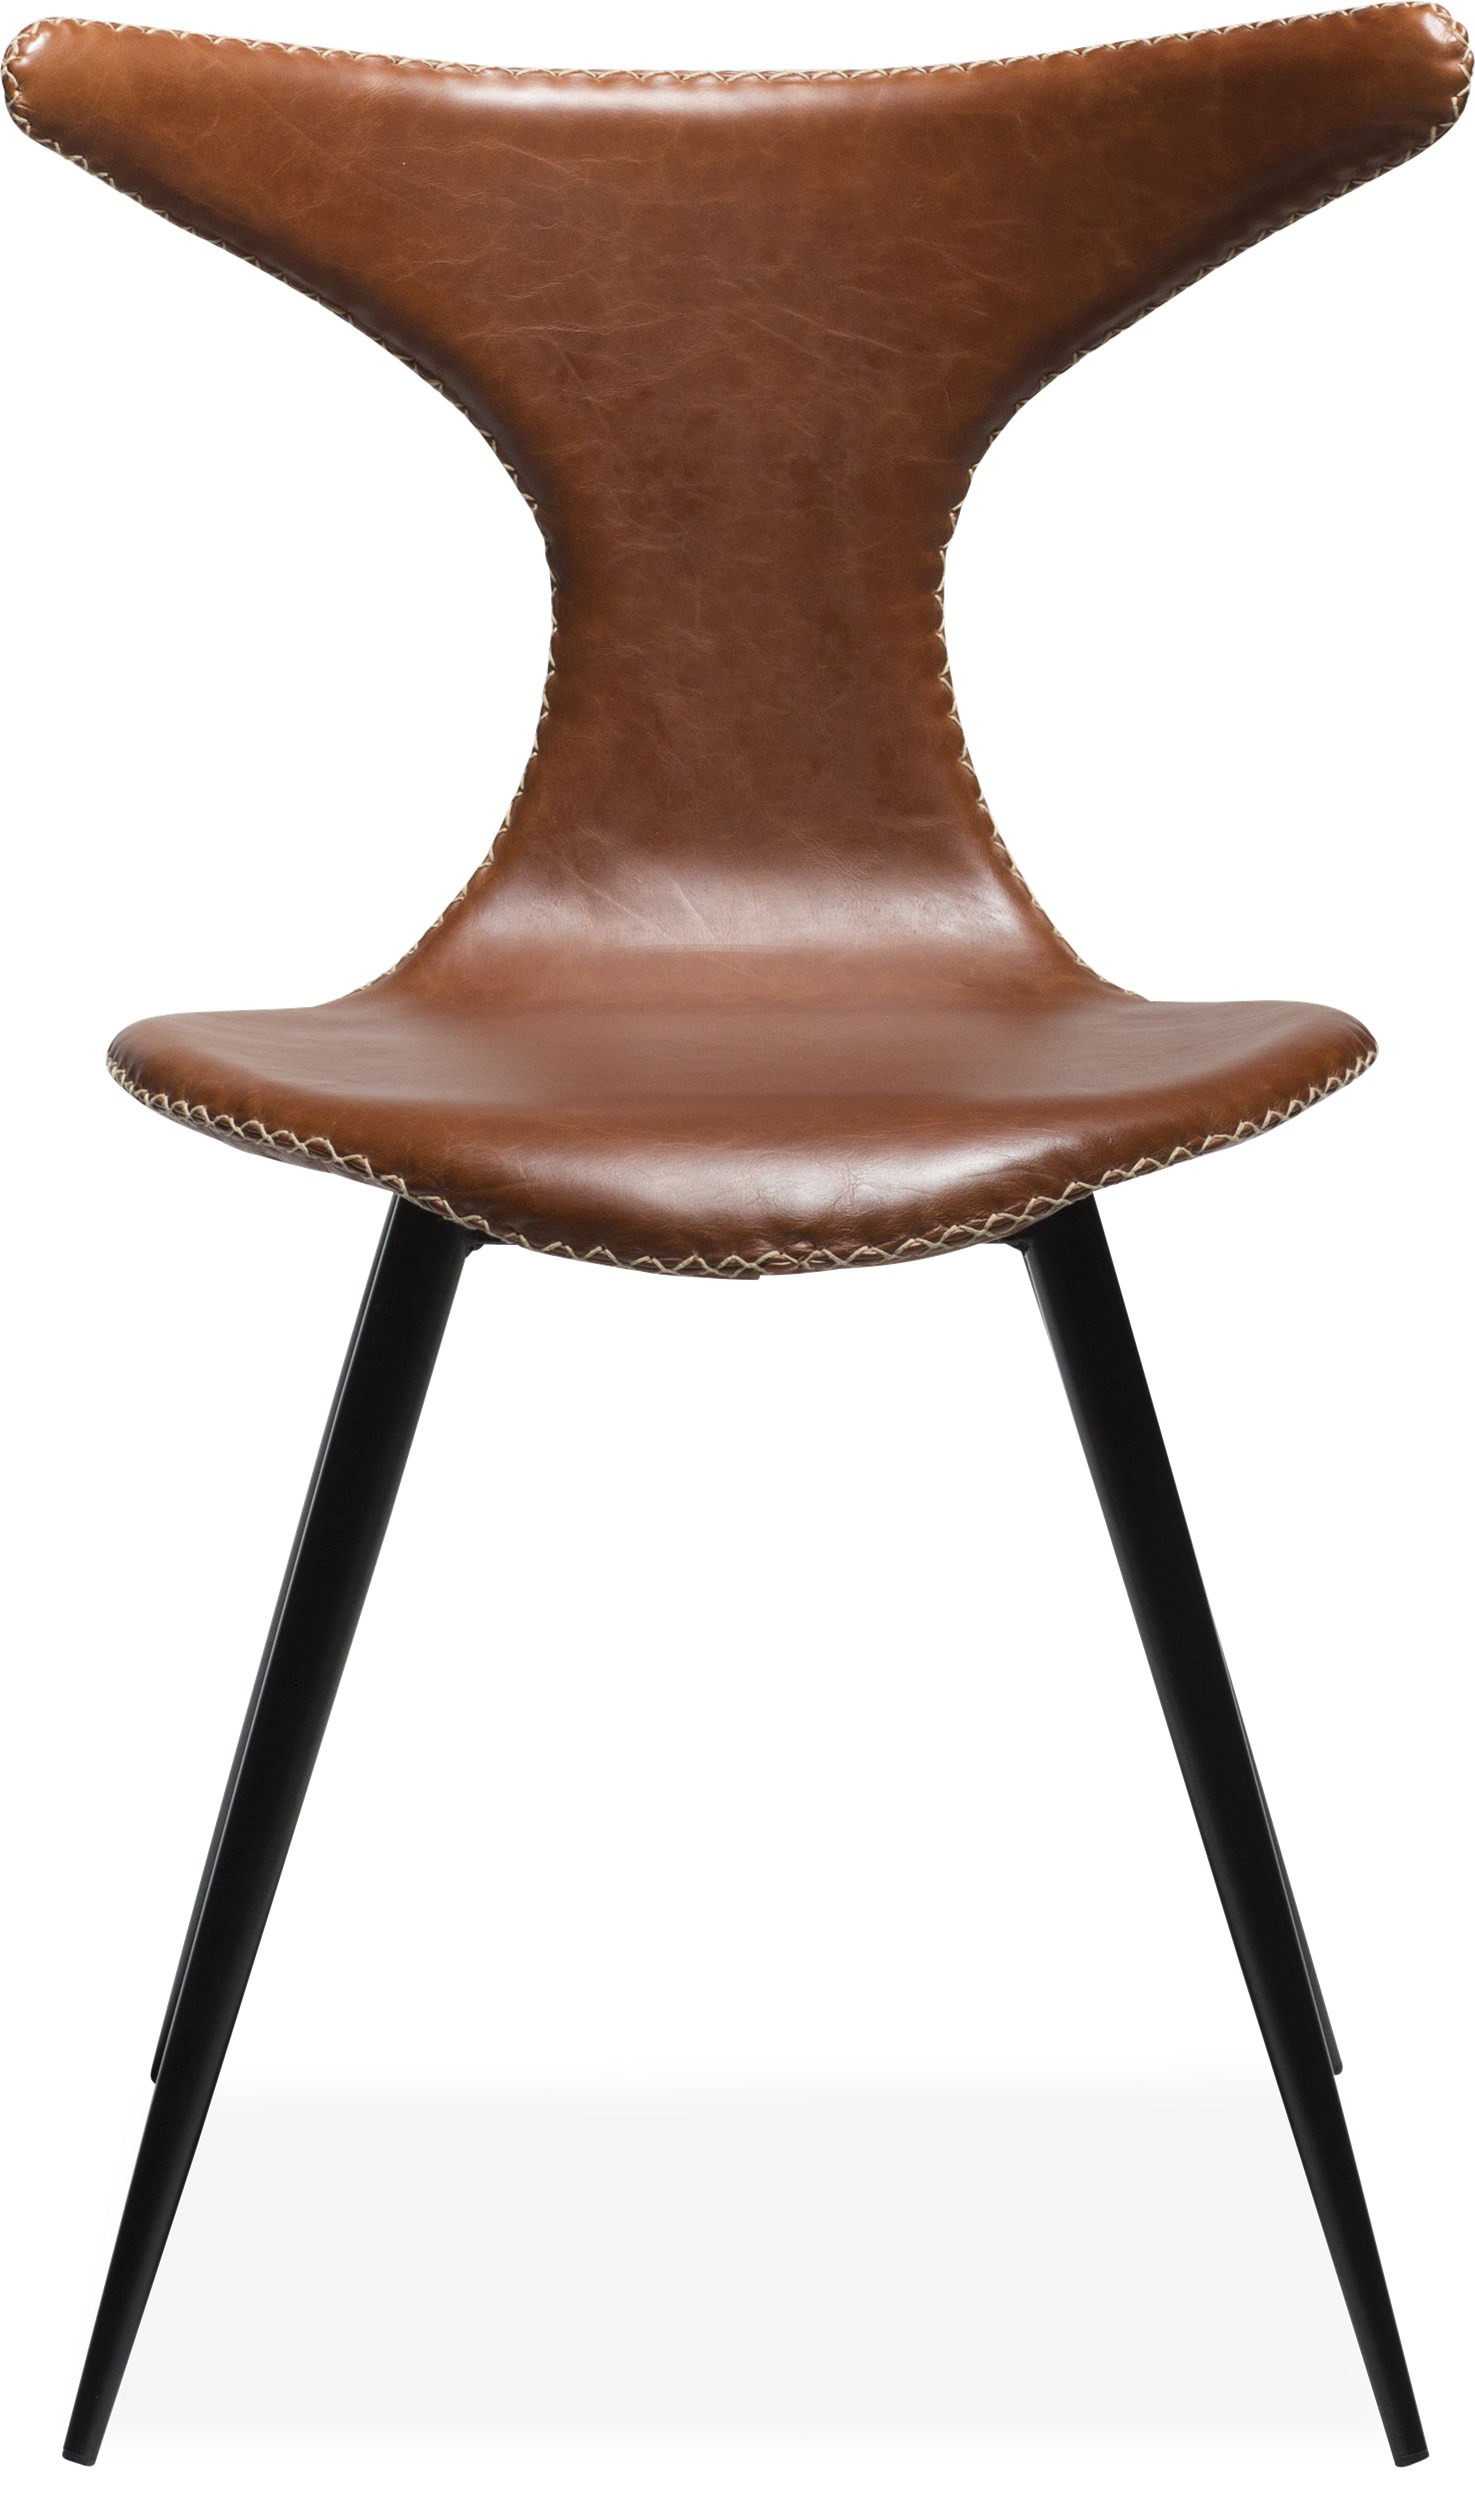 Dolphin matstol - Sits i vintage ljusbrunt konstläder, med kontrastfärgade sömmar och runda ben i svartlackerad metall